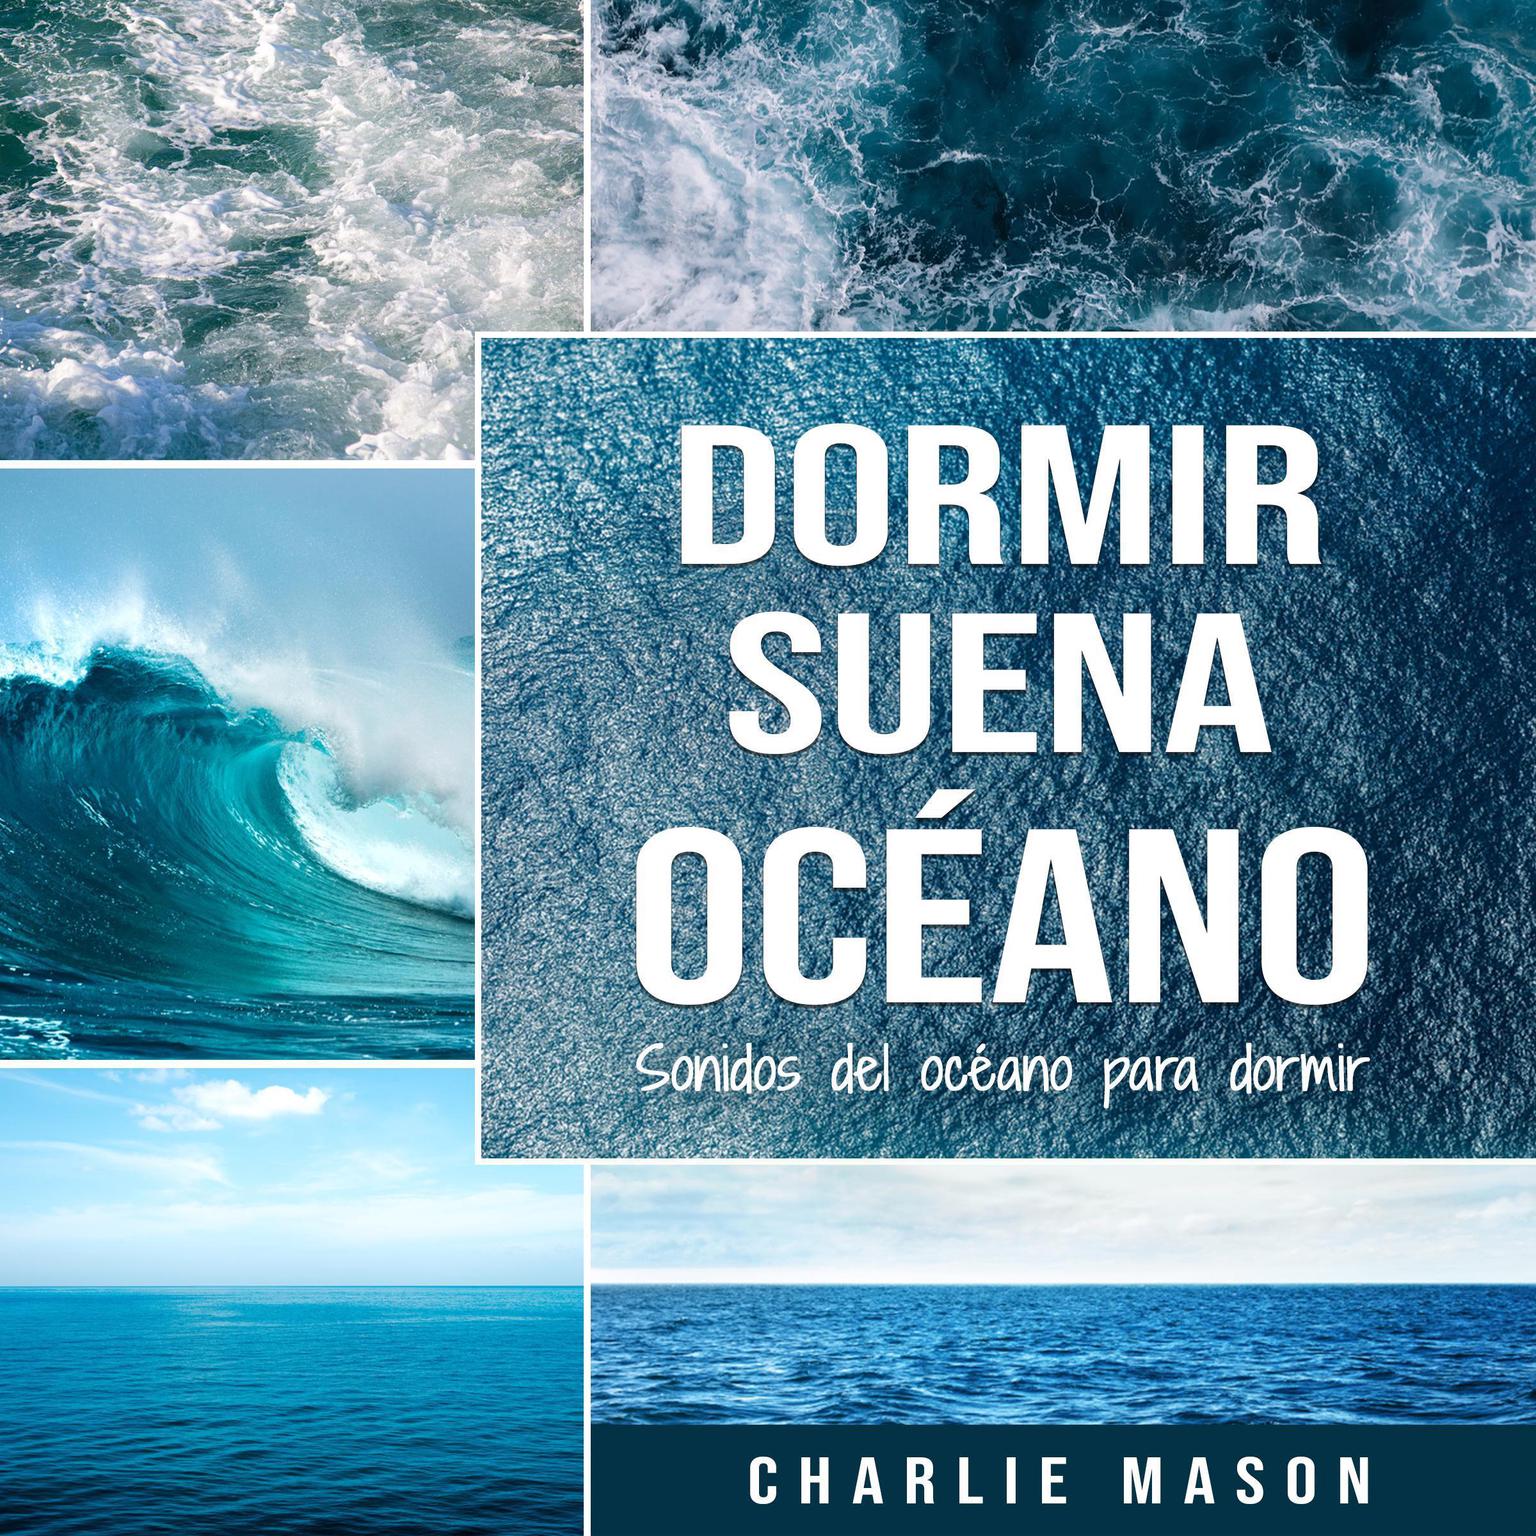 Dormir suena océano: Sonidos del océano para dormir Audiobook, by Charlie Mason